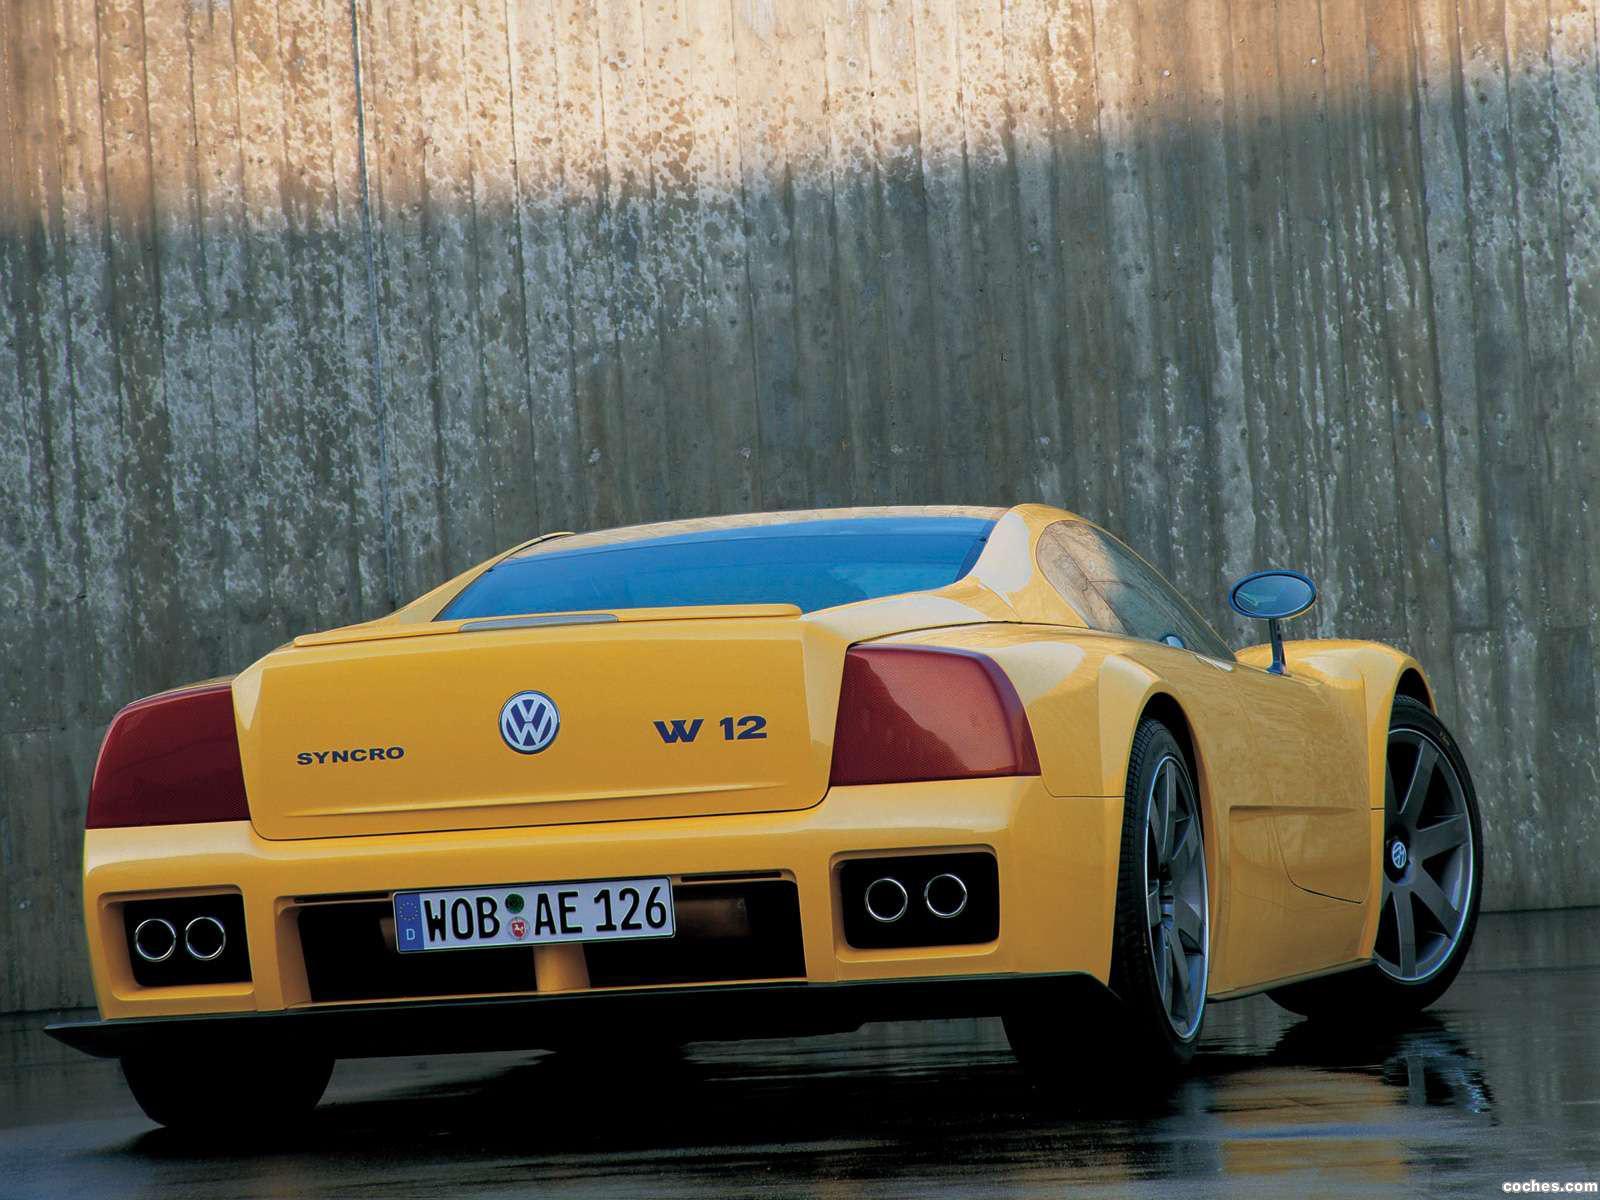 Fotos de Volkswagen W12 Syncro Concept 1998